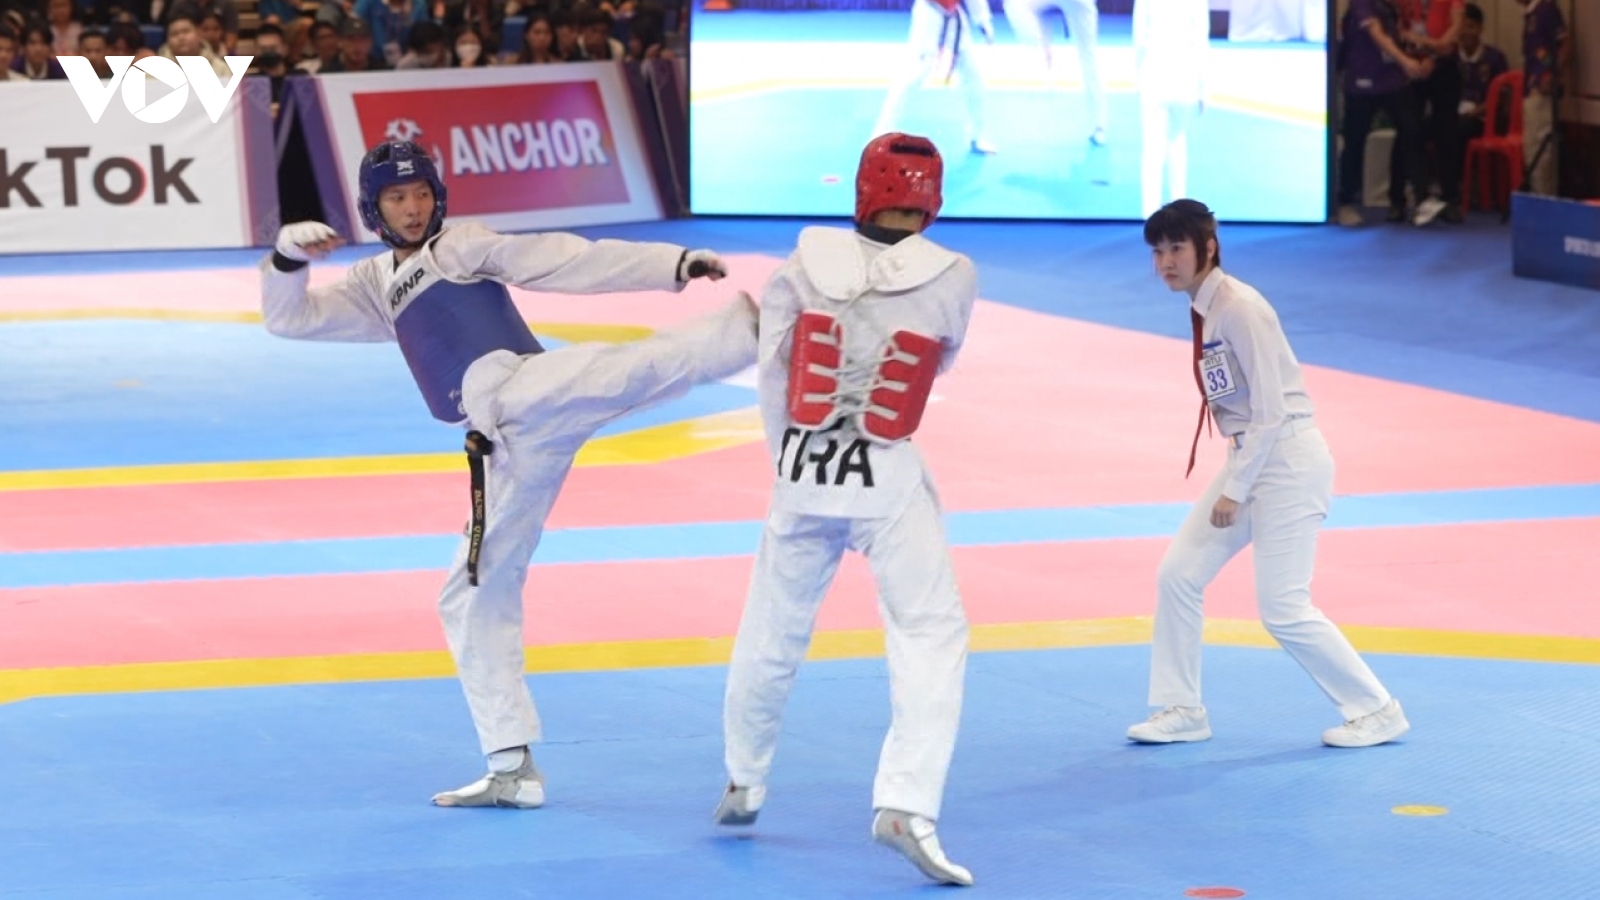 Võ sĩ Teakwondo vượt ám ảnh thất bại để giành HCV "đặc biệt" cho thể thao Việt Nam